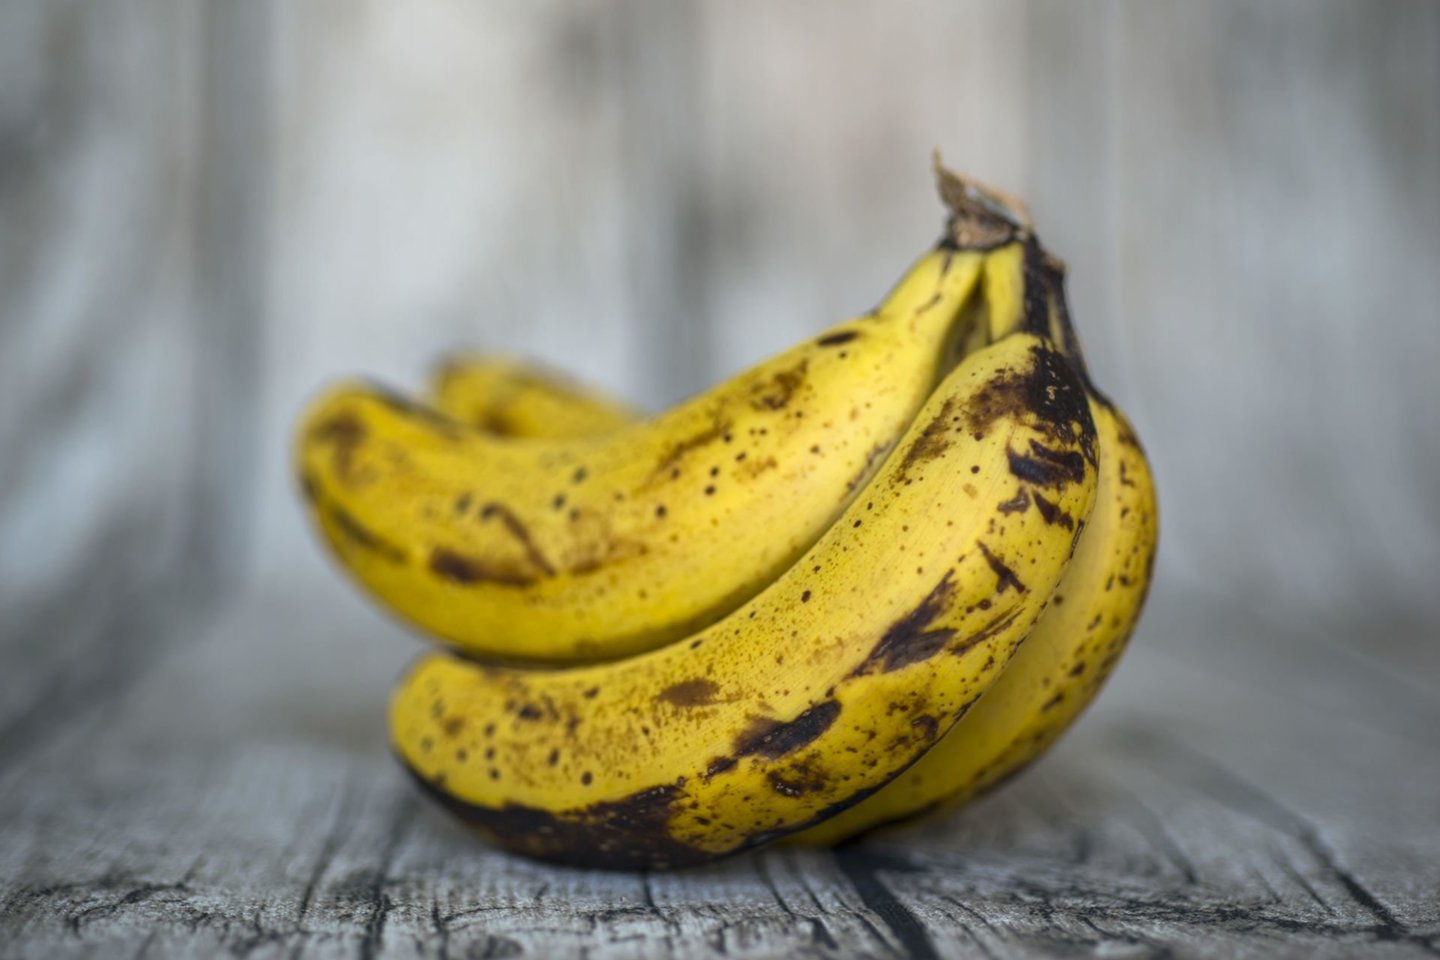   Parudavusius bananus yra visiškai saugu valgyti ir tokio tipo vaisius yra net lengviau virškinamas.<br> 123rf nuotr.